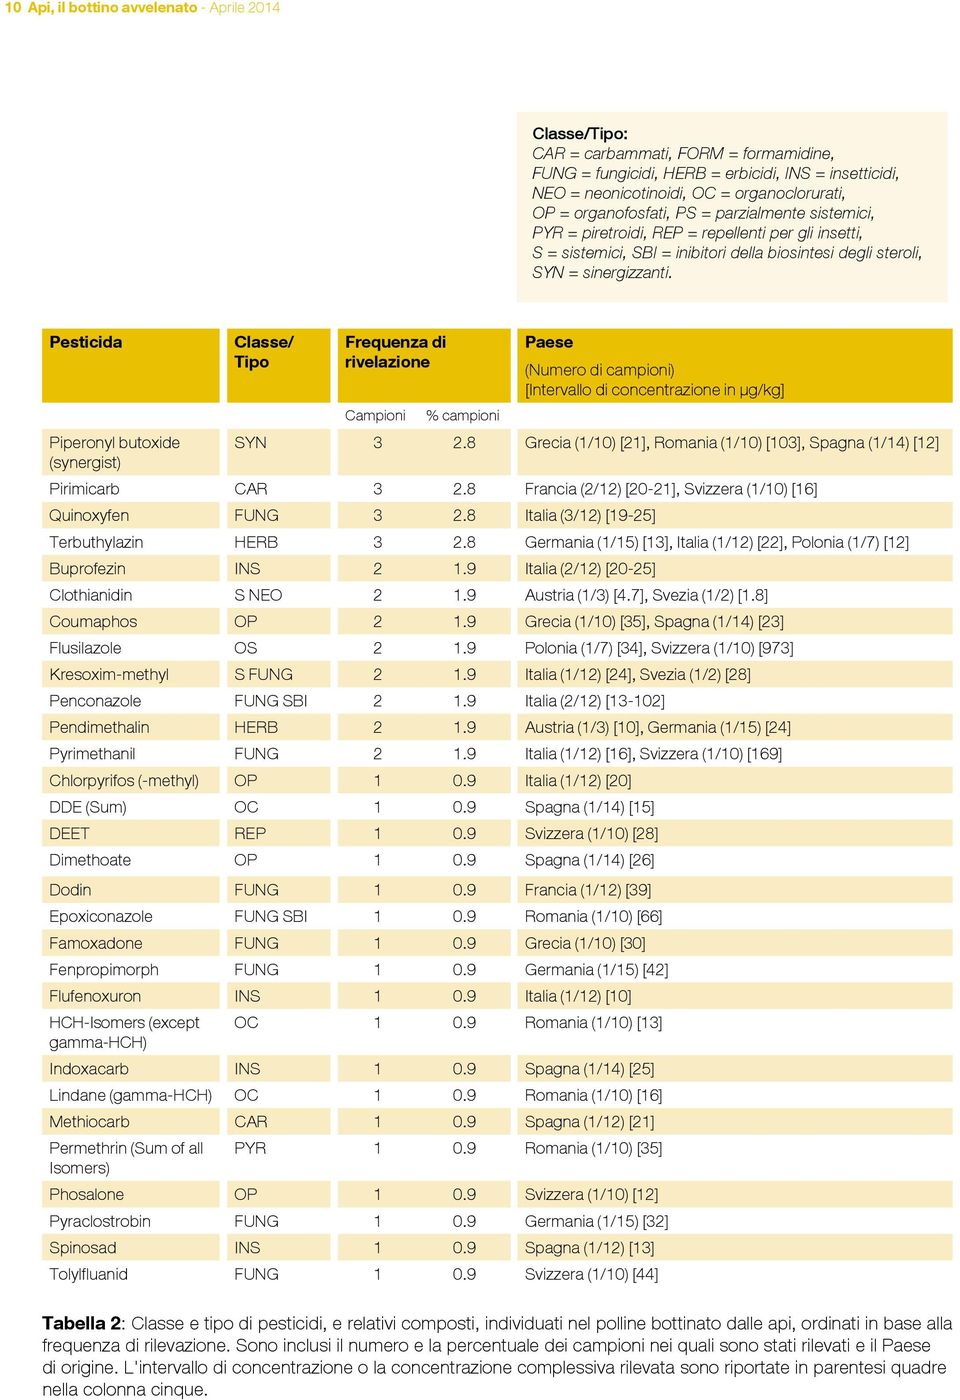 Pesticida Piperonyl butoxide (synergist) Classe/ Tipo Frequenza di rivelazione Paese (Numero di campioni) [Intervallo di concentrazione in μg/kg] Campioni % campioni SYN 3 2.